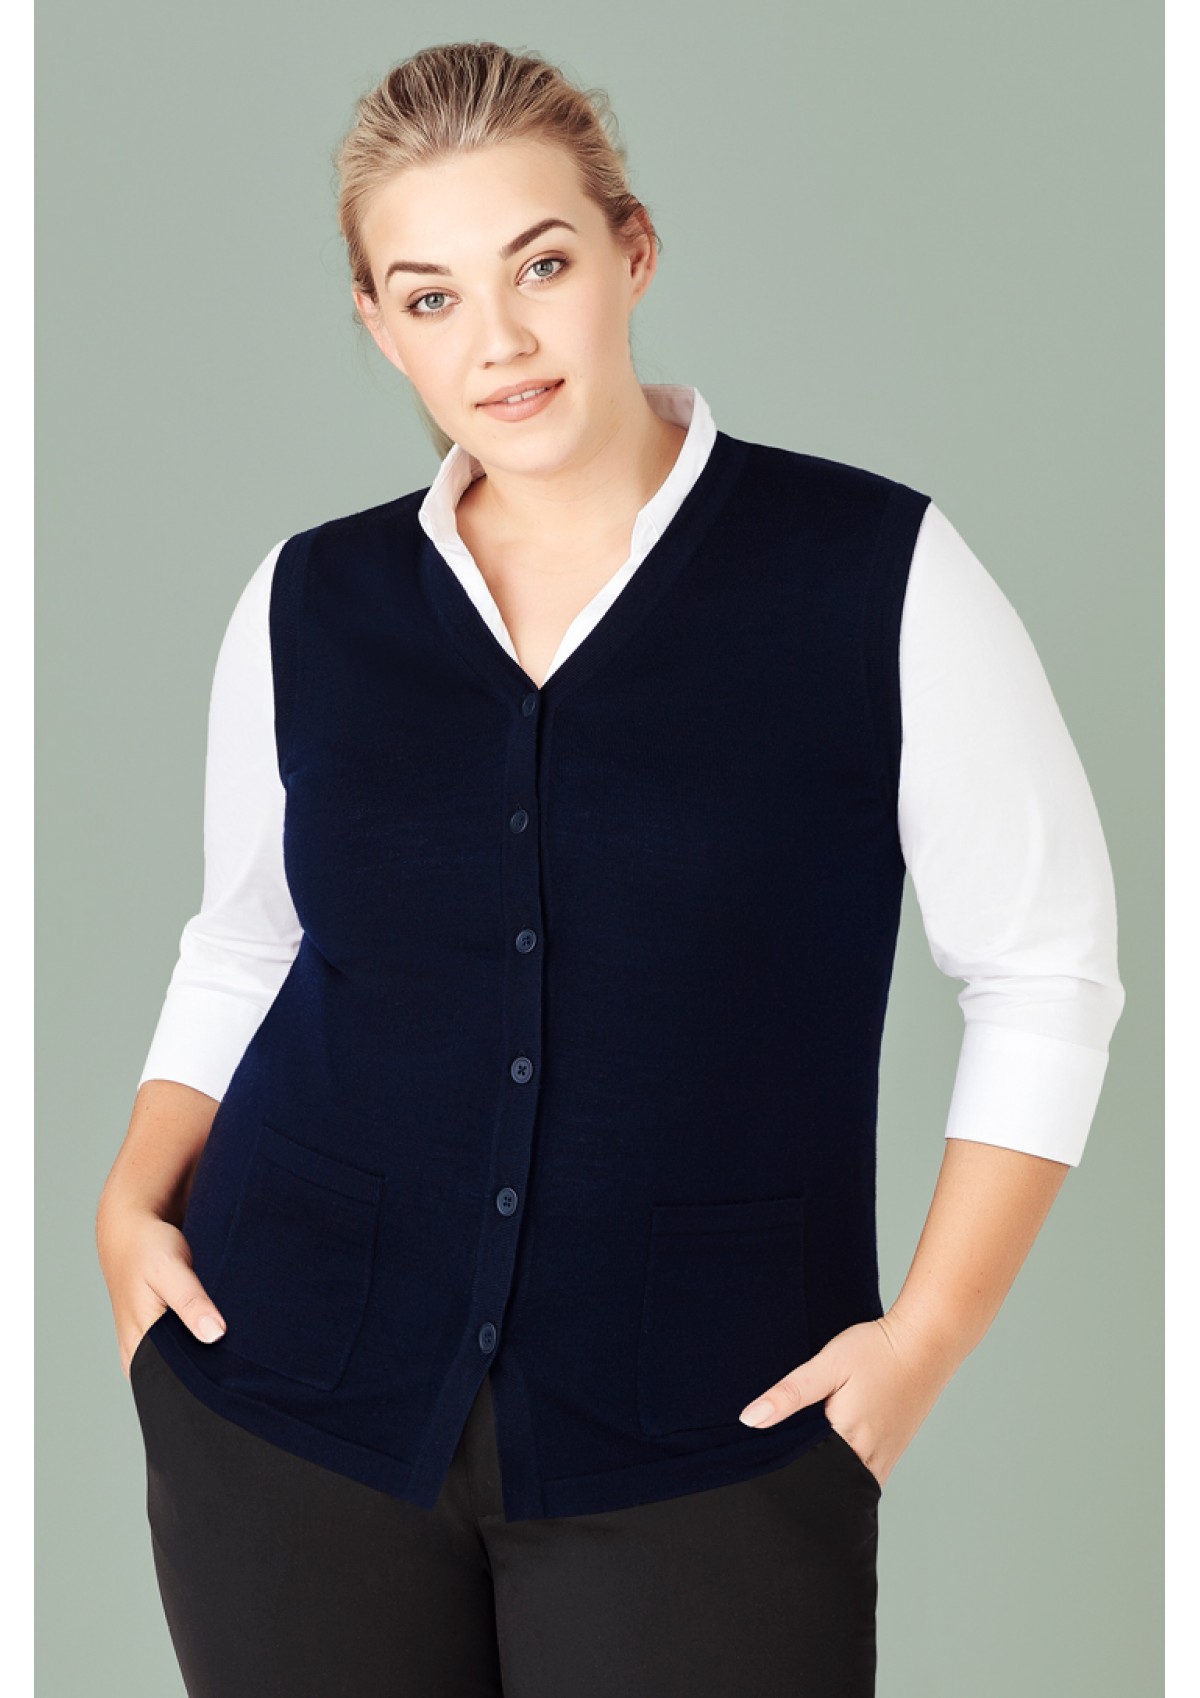 CK961LV Biz Collection Womens Button Front Knit Vest;Quality Uniforms Nz